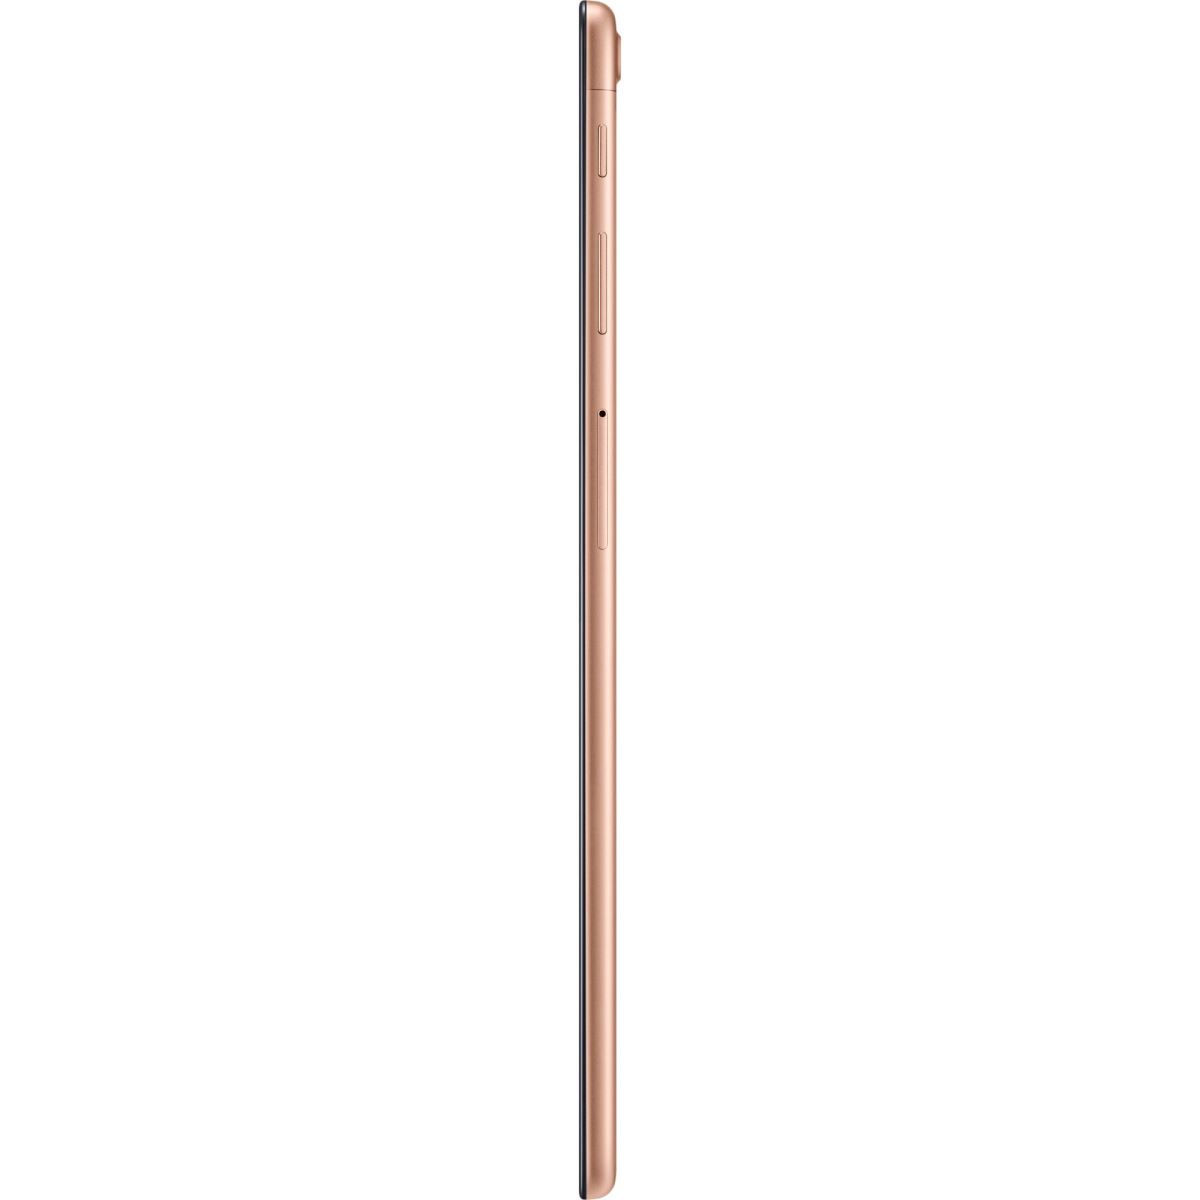 Tableta Samsung Galaxy Tab A (2019) 10.1", Gold, 4G, 2GB, Stocare 32GB